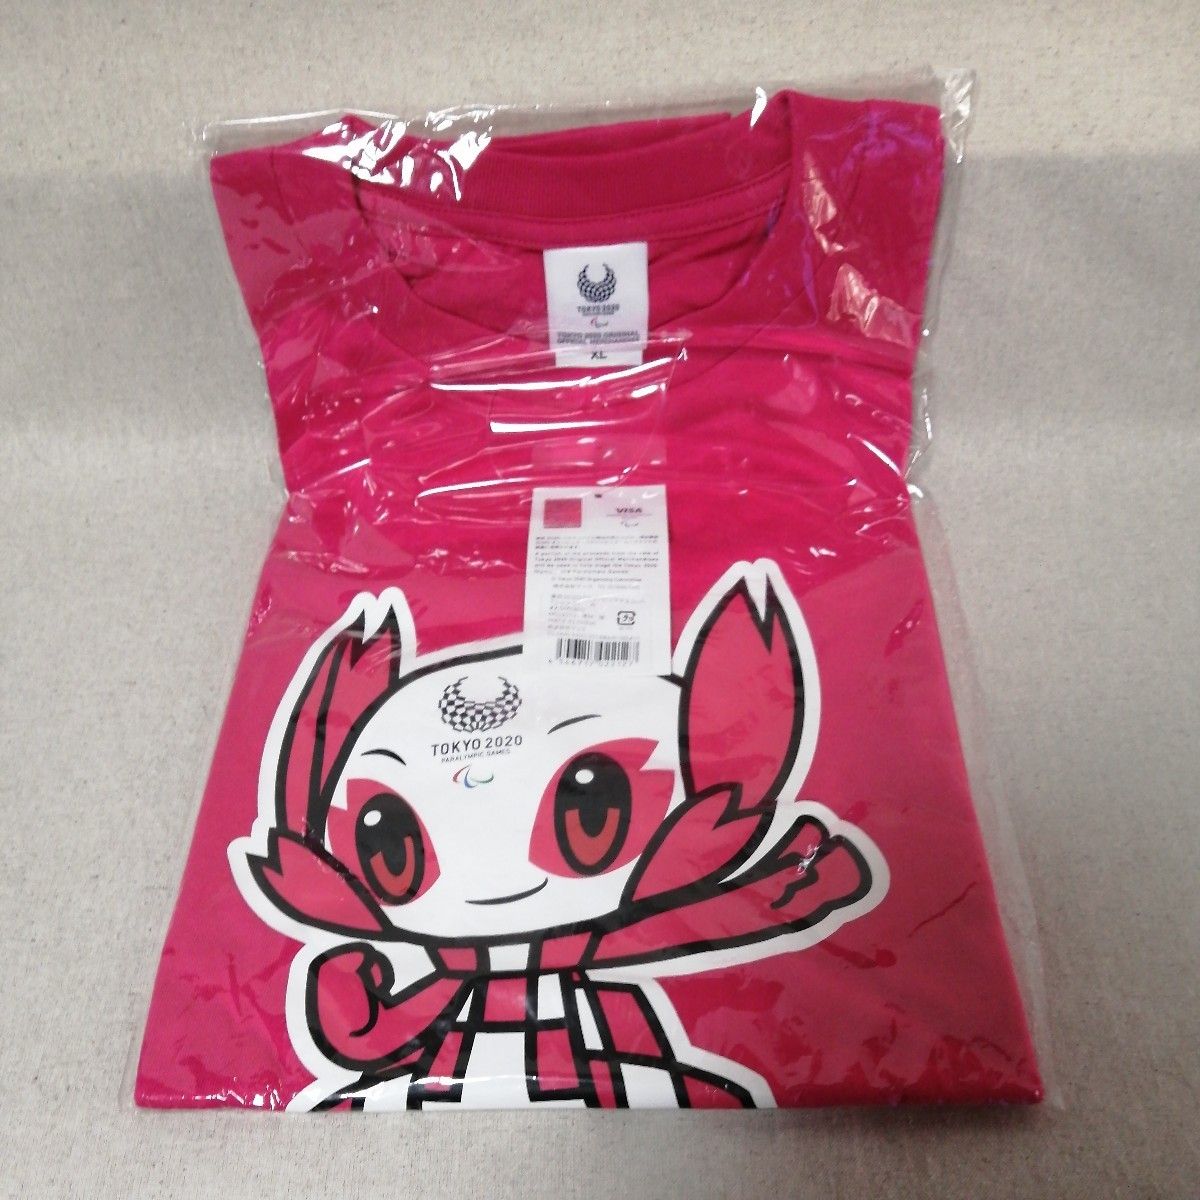 東京2020 オリンピック公式マスコット ソメイティ Tシャツ ピンク XL マスコットTシャツ